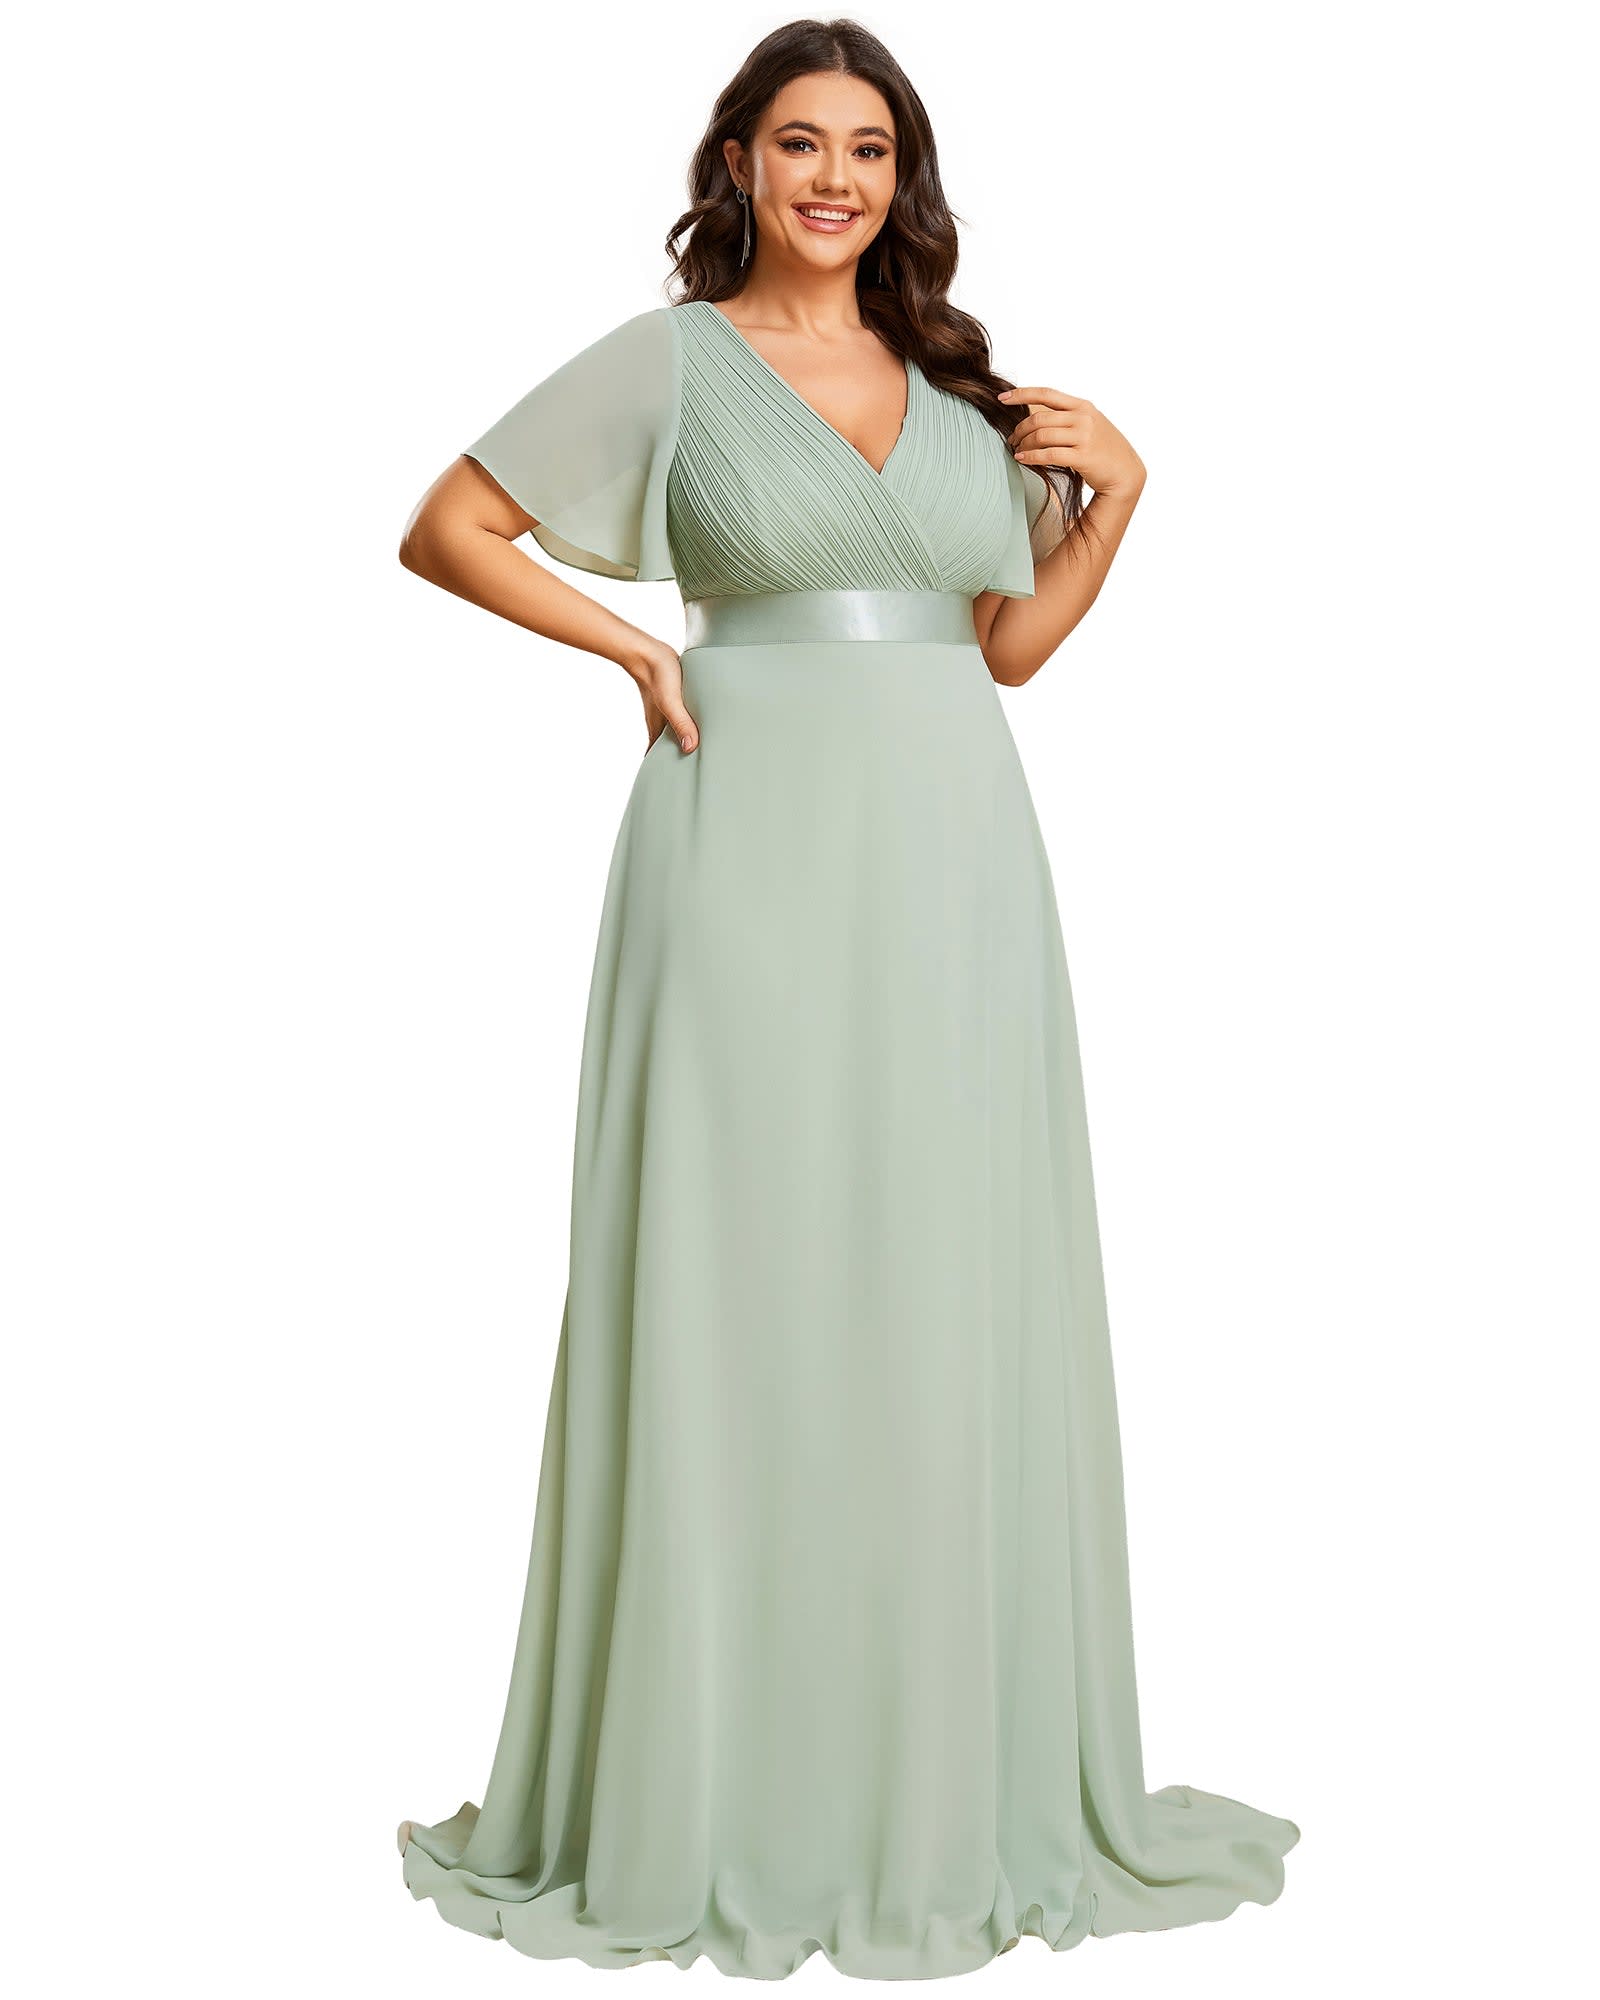 Long Chiffon Empire Waist Bridesmaid Dress with Short Flutter Sleeves | Mint Green